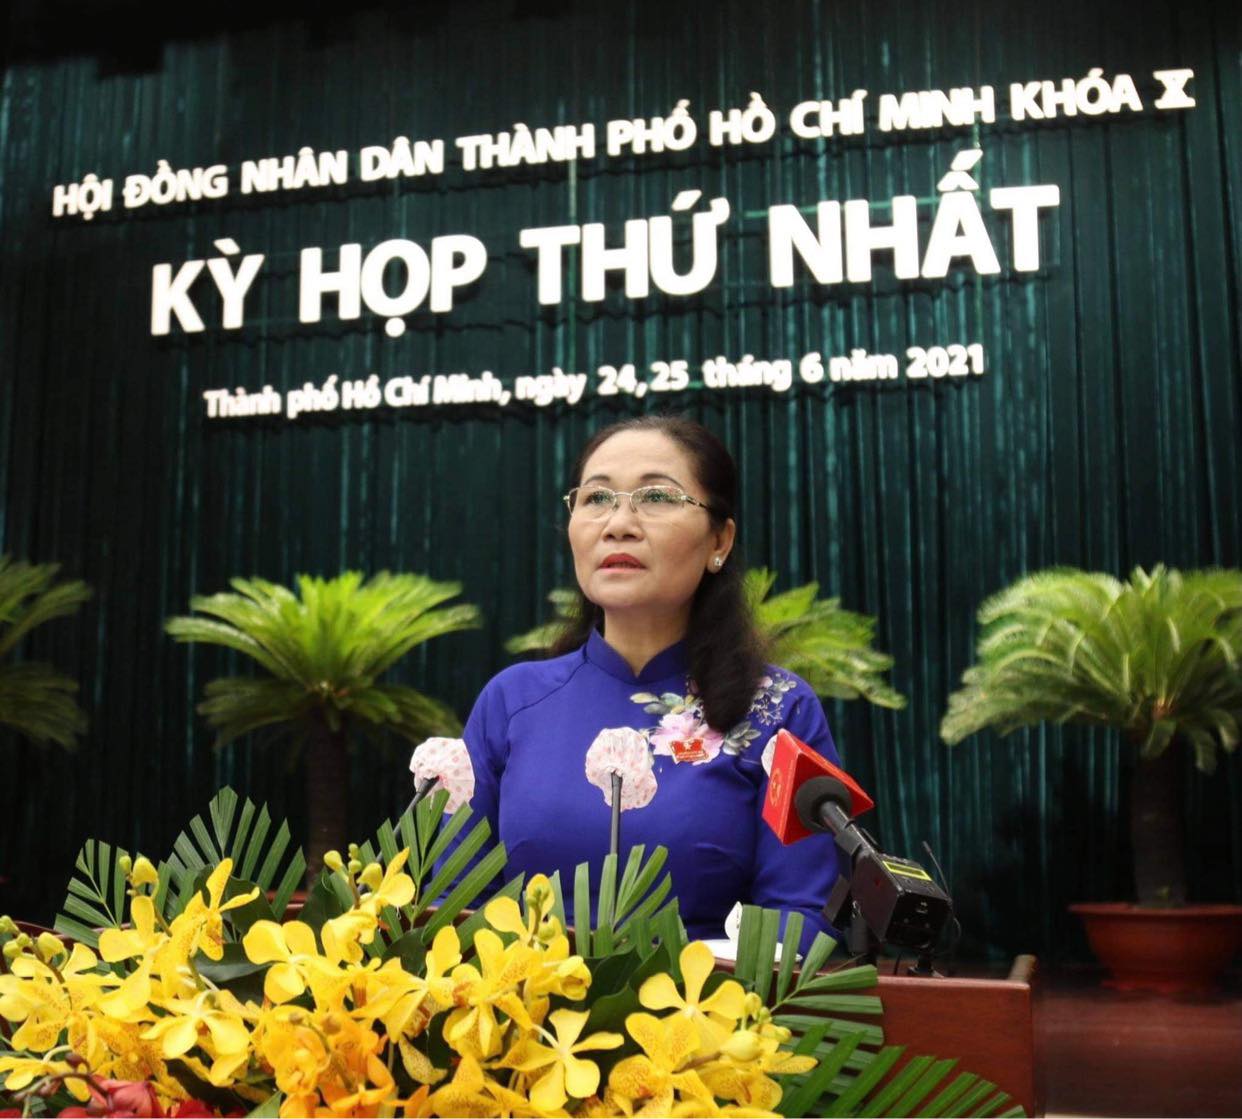 Bà Nguyễn Thị Lệ tái đắc cử Chủ tịch HĐND TPHCM